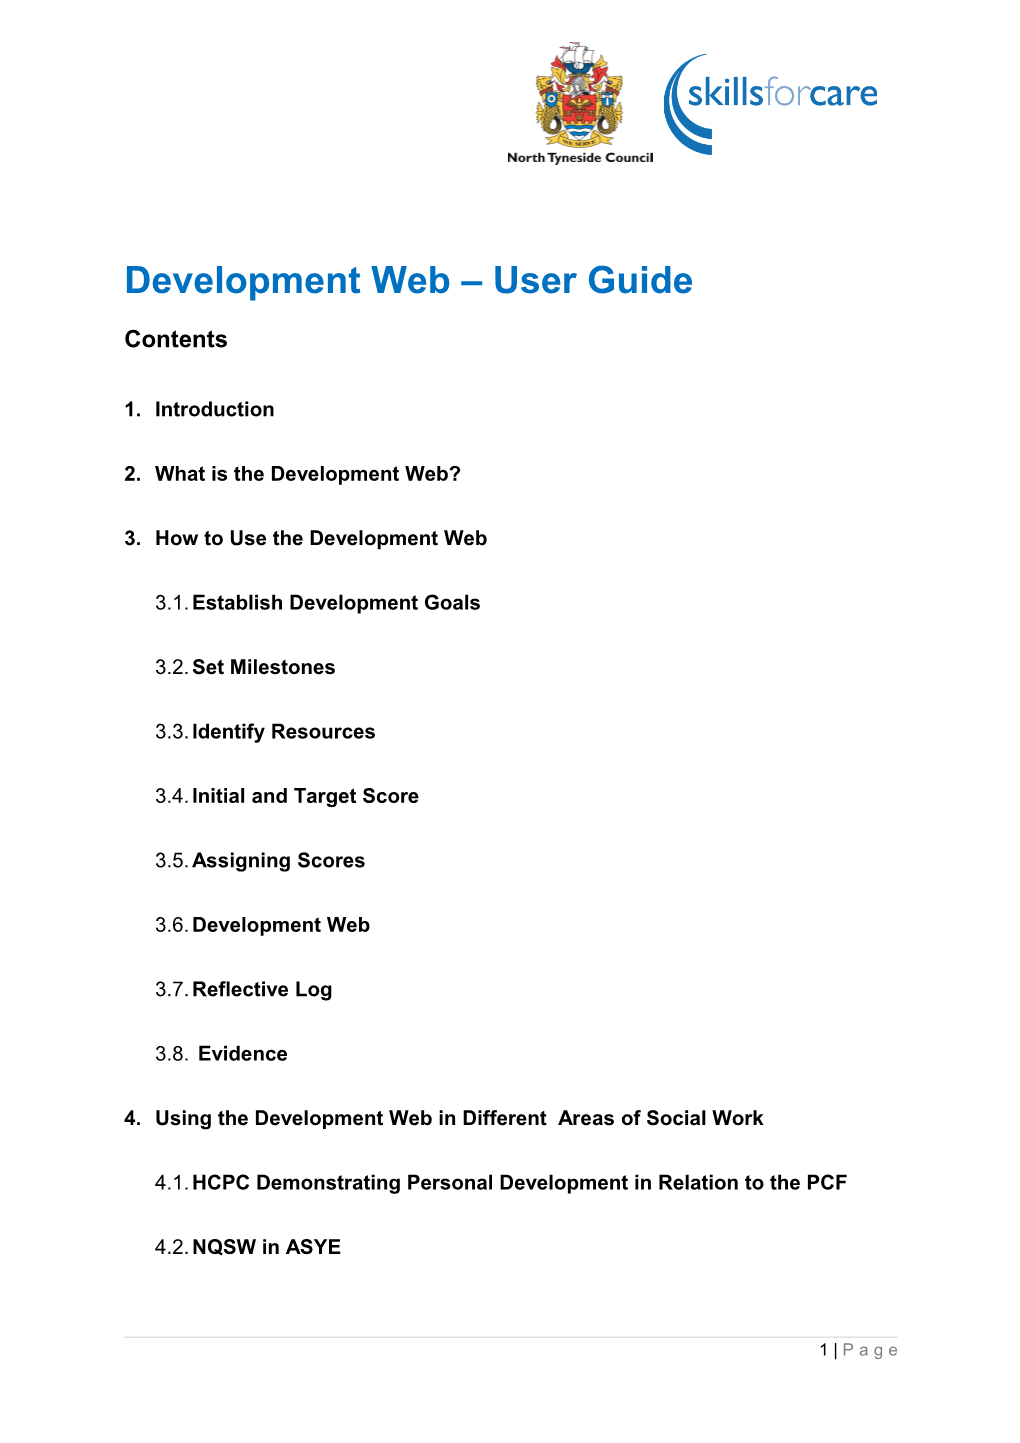 Development Web - User Guide